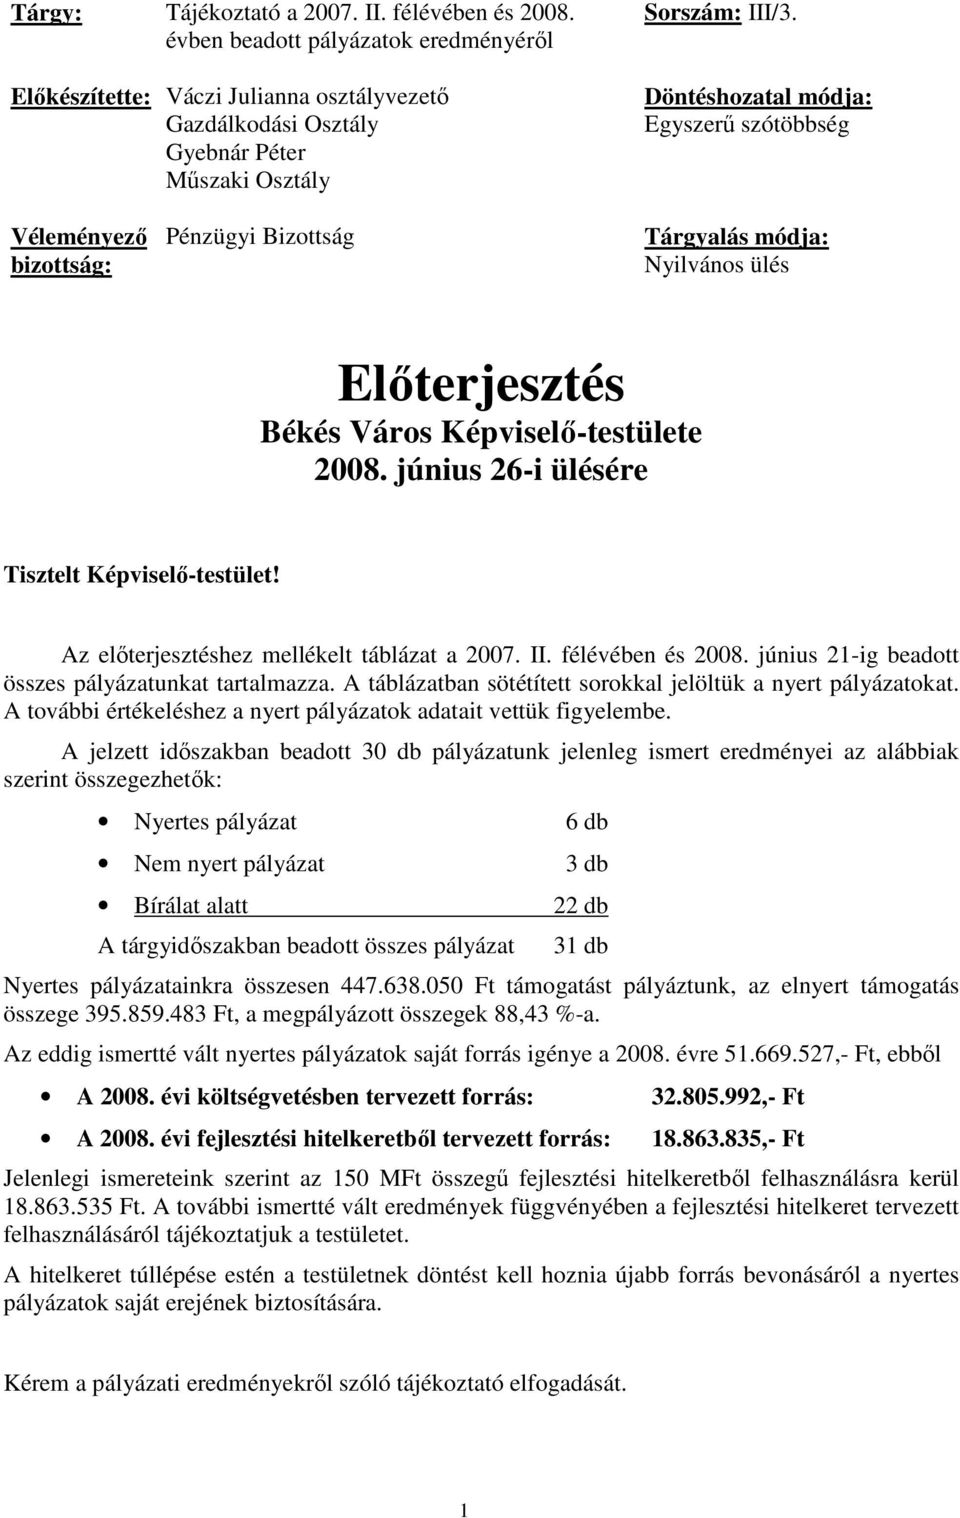 június 26-i ülésére Tisztelt Képviselı-testület! Az elıterjesztéshez mellékelt táblázat a 2007. II. félévében és 2008. június 21-ig beadott összes pályázatunkat tartalmazza.